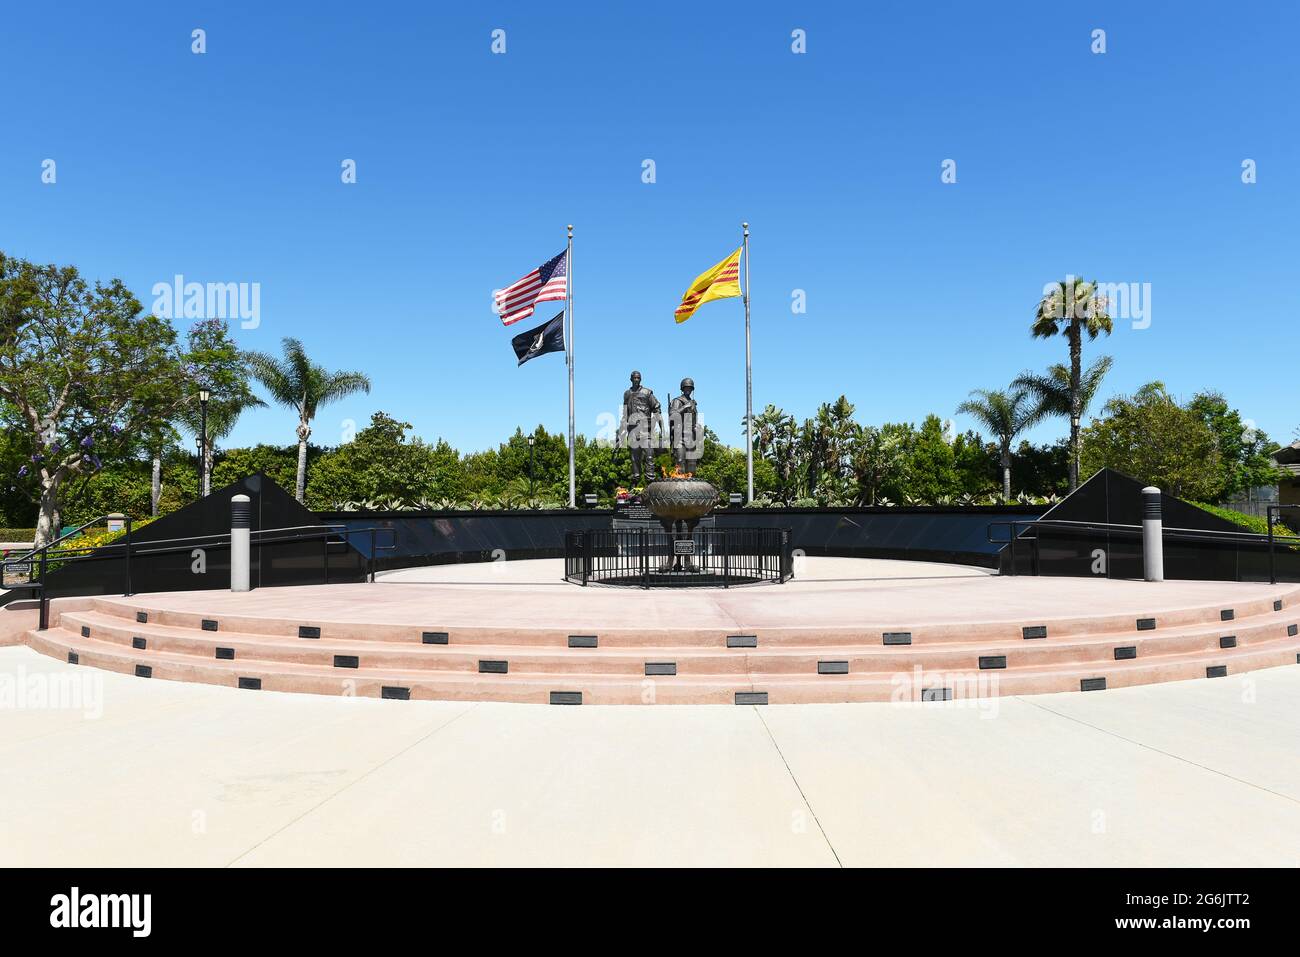 WESTMINSTER, KALIFORNIEN - 5. JULI 2021: Vietnam war Memorial im Sid Goldstein Freedom Park. Stockfoto